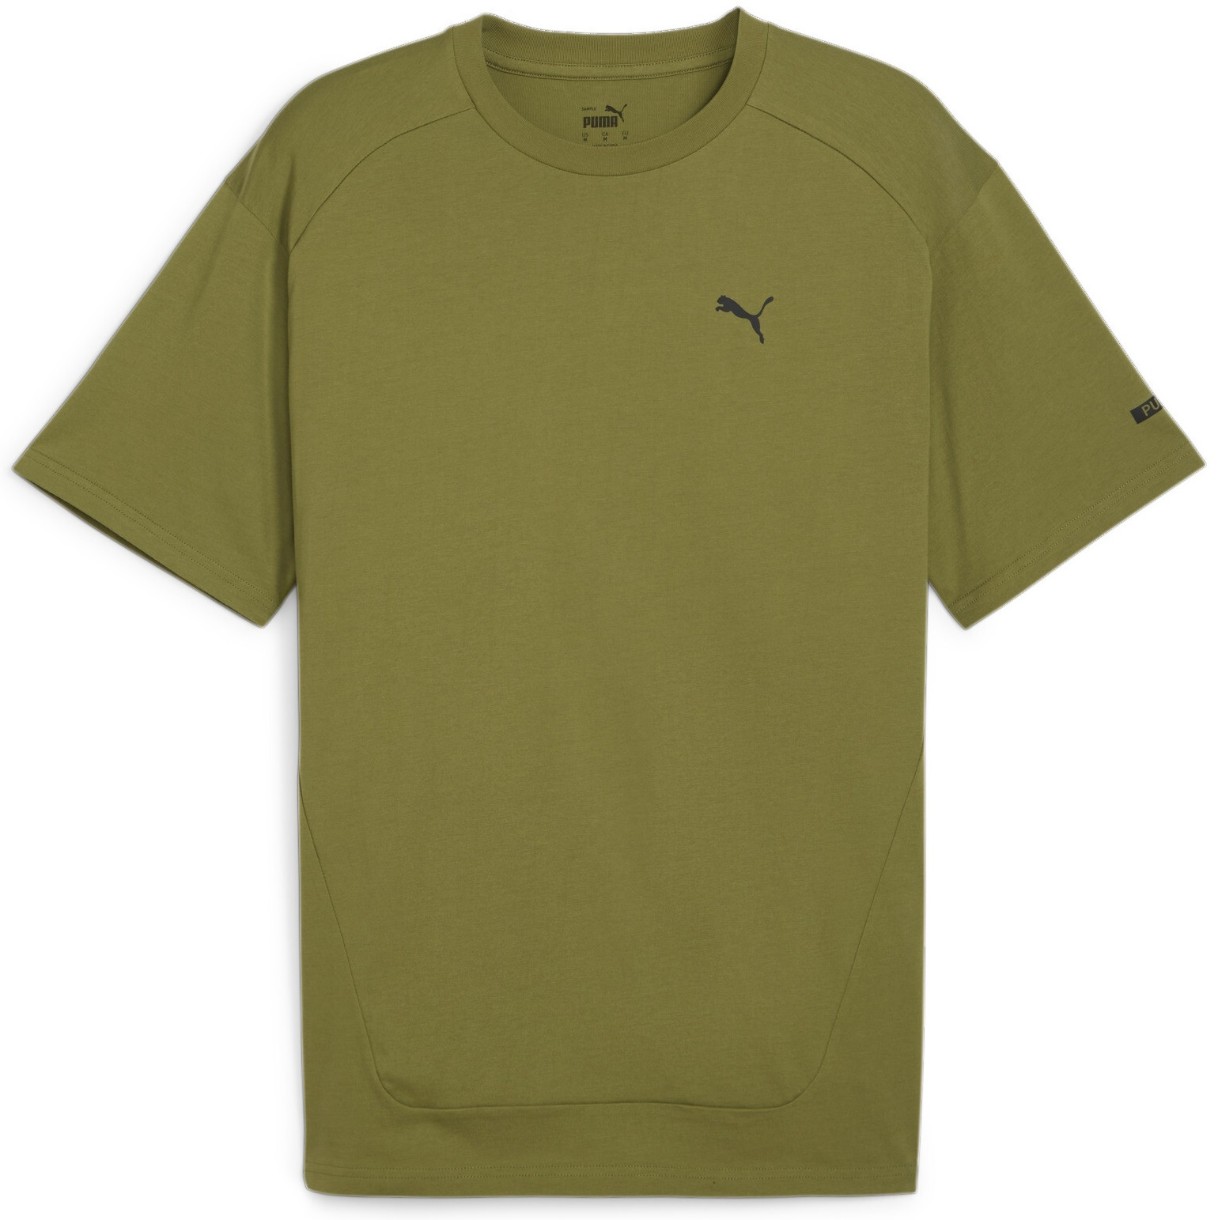 Мужская футболка Puma Rad/Cal Tee Olive Green, s.S